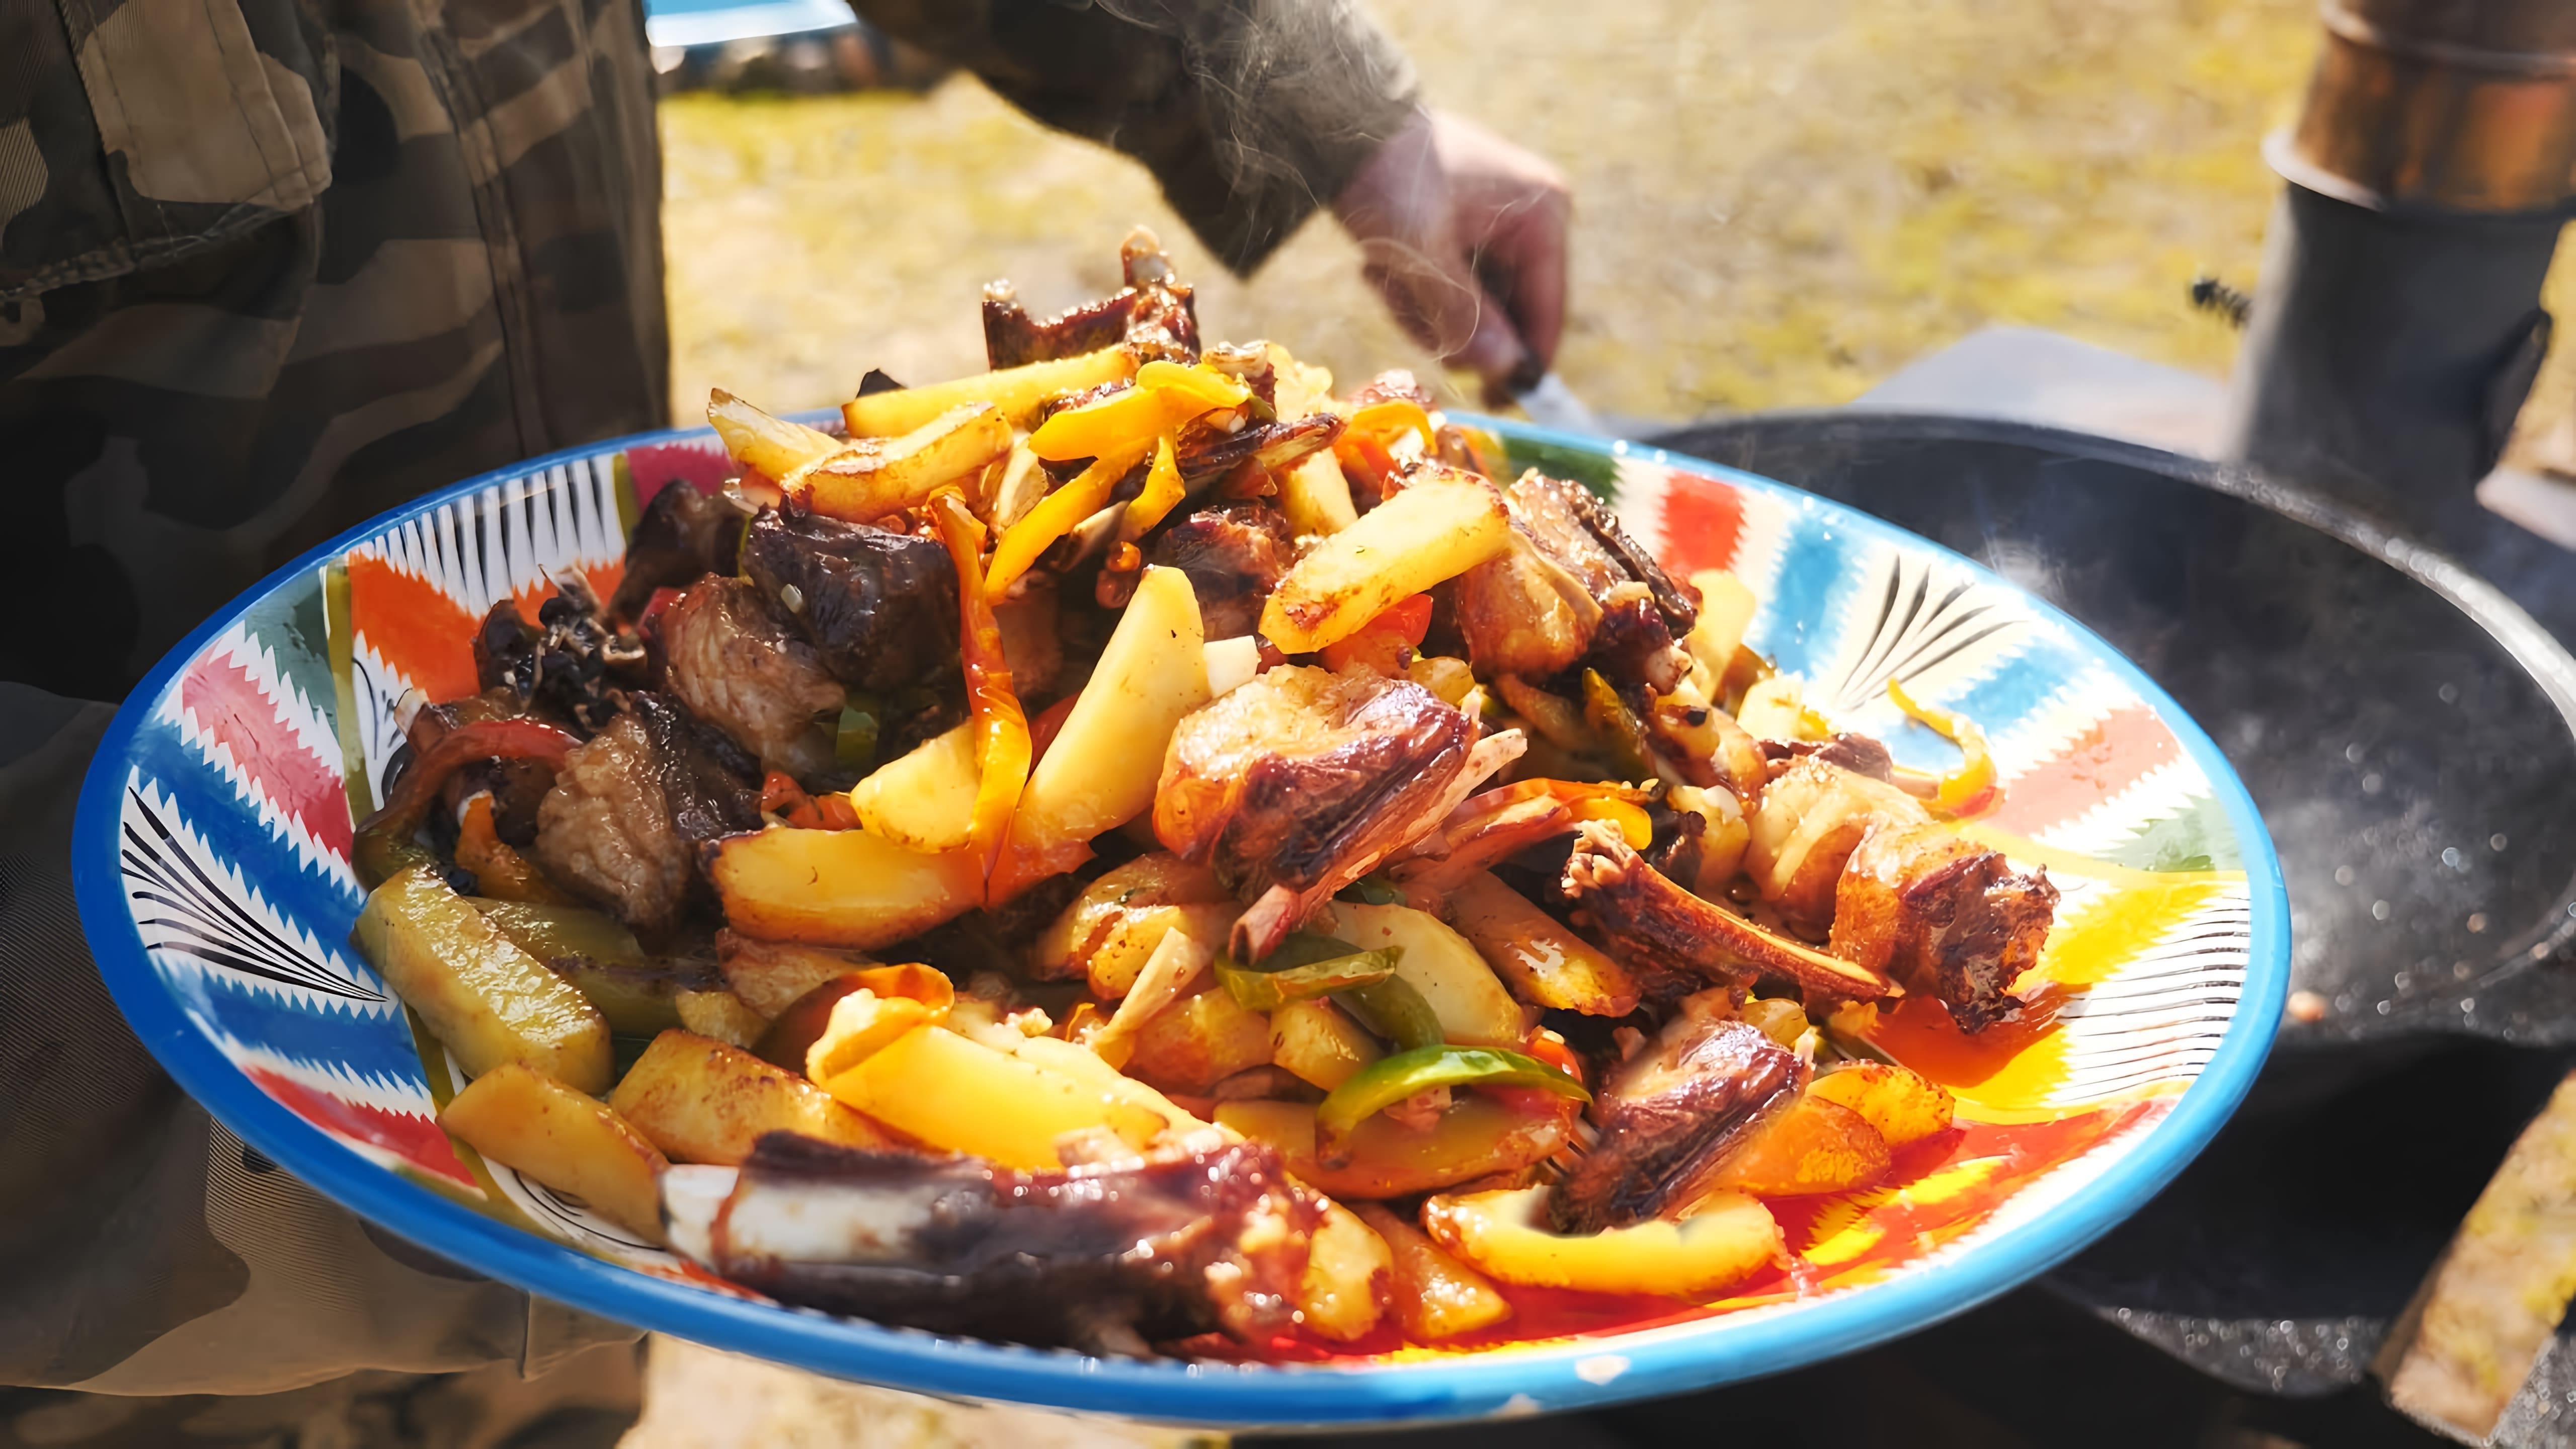 Видео как приготовить кабаргу, блюдо азербайджанской кухни, состоящее из баранины и картофеля, приготовленных в казане